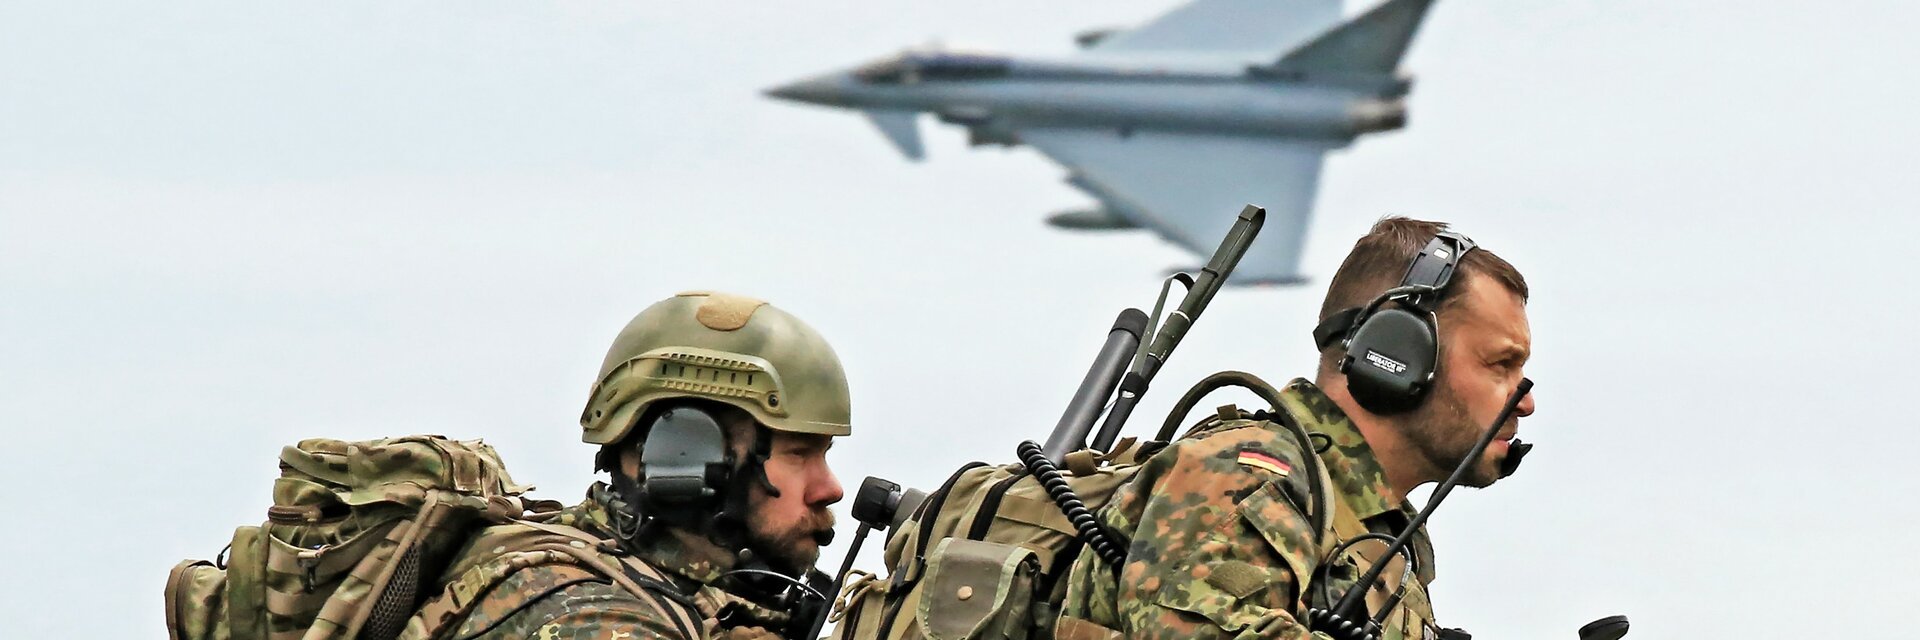 Soldaten mit FunkgerÃ¤ten koordinieren den Einsatz von Kampfflugzeugen zur UnterstÃ¼tzung der Bodentruppen